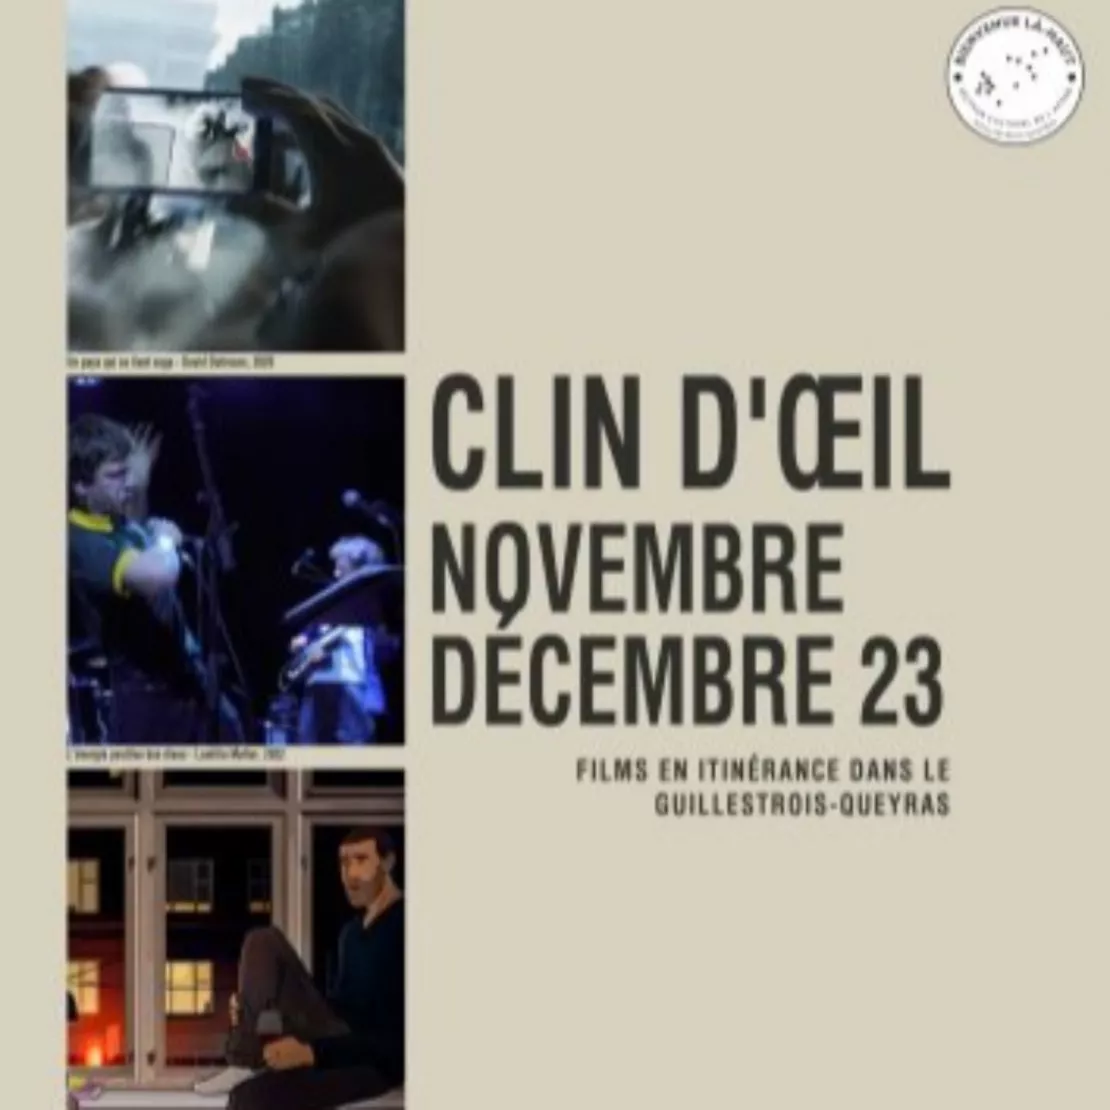 CLIN D'OEIL, du 7 au 30 novembre 2023, Cycle de films documentaires en itinérance dans le Guillestrois-Queyras.